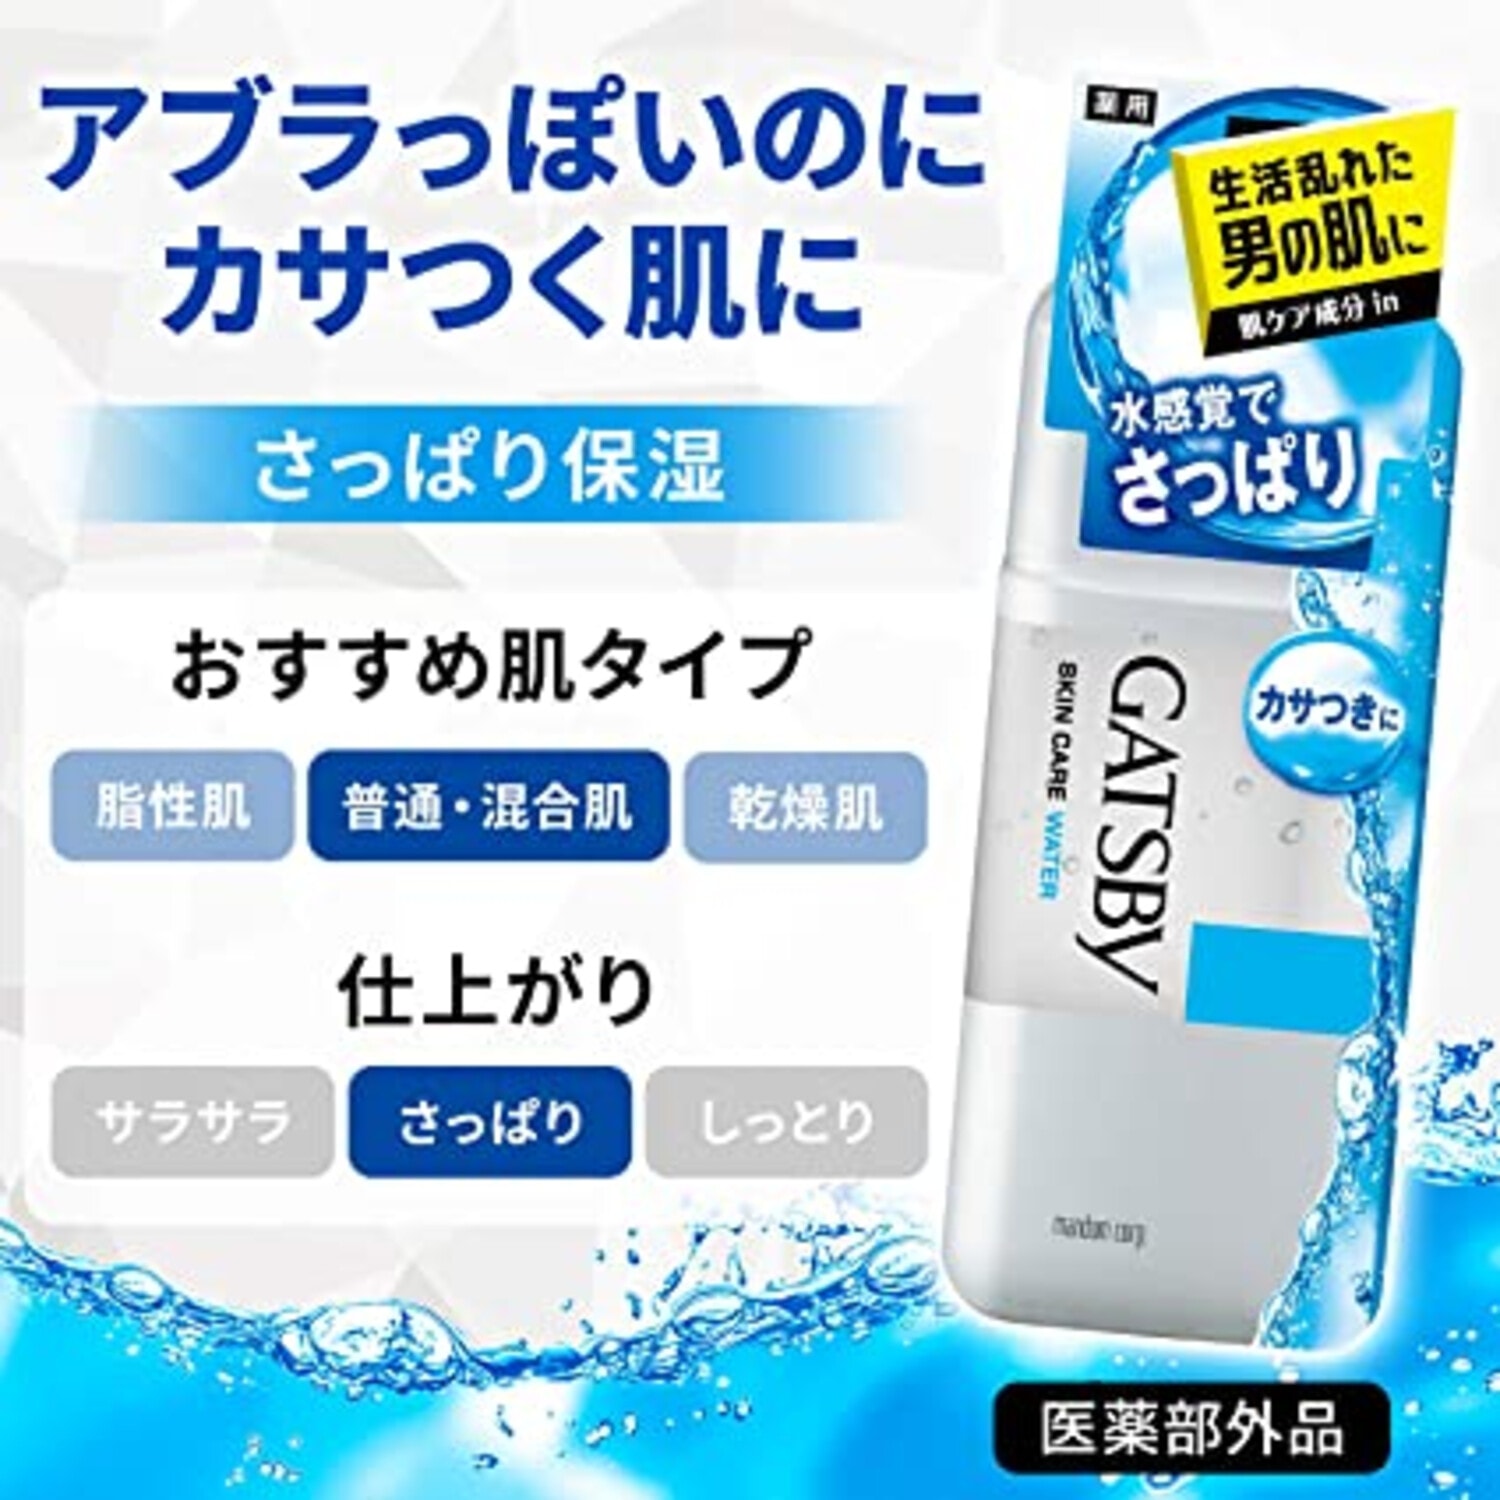 Gatsby Skin Care Water Мужской лосьон для ухода за кожей с Акне успокаивающий с антибактериальным и увлажняющим эффектом, 170 мл. / 100365